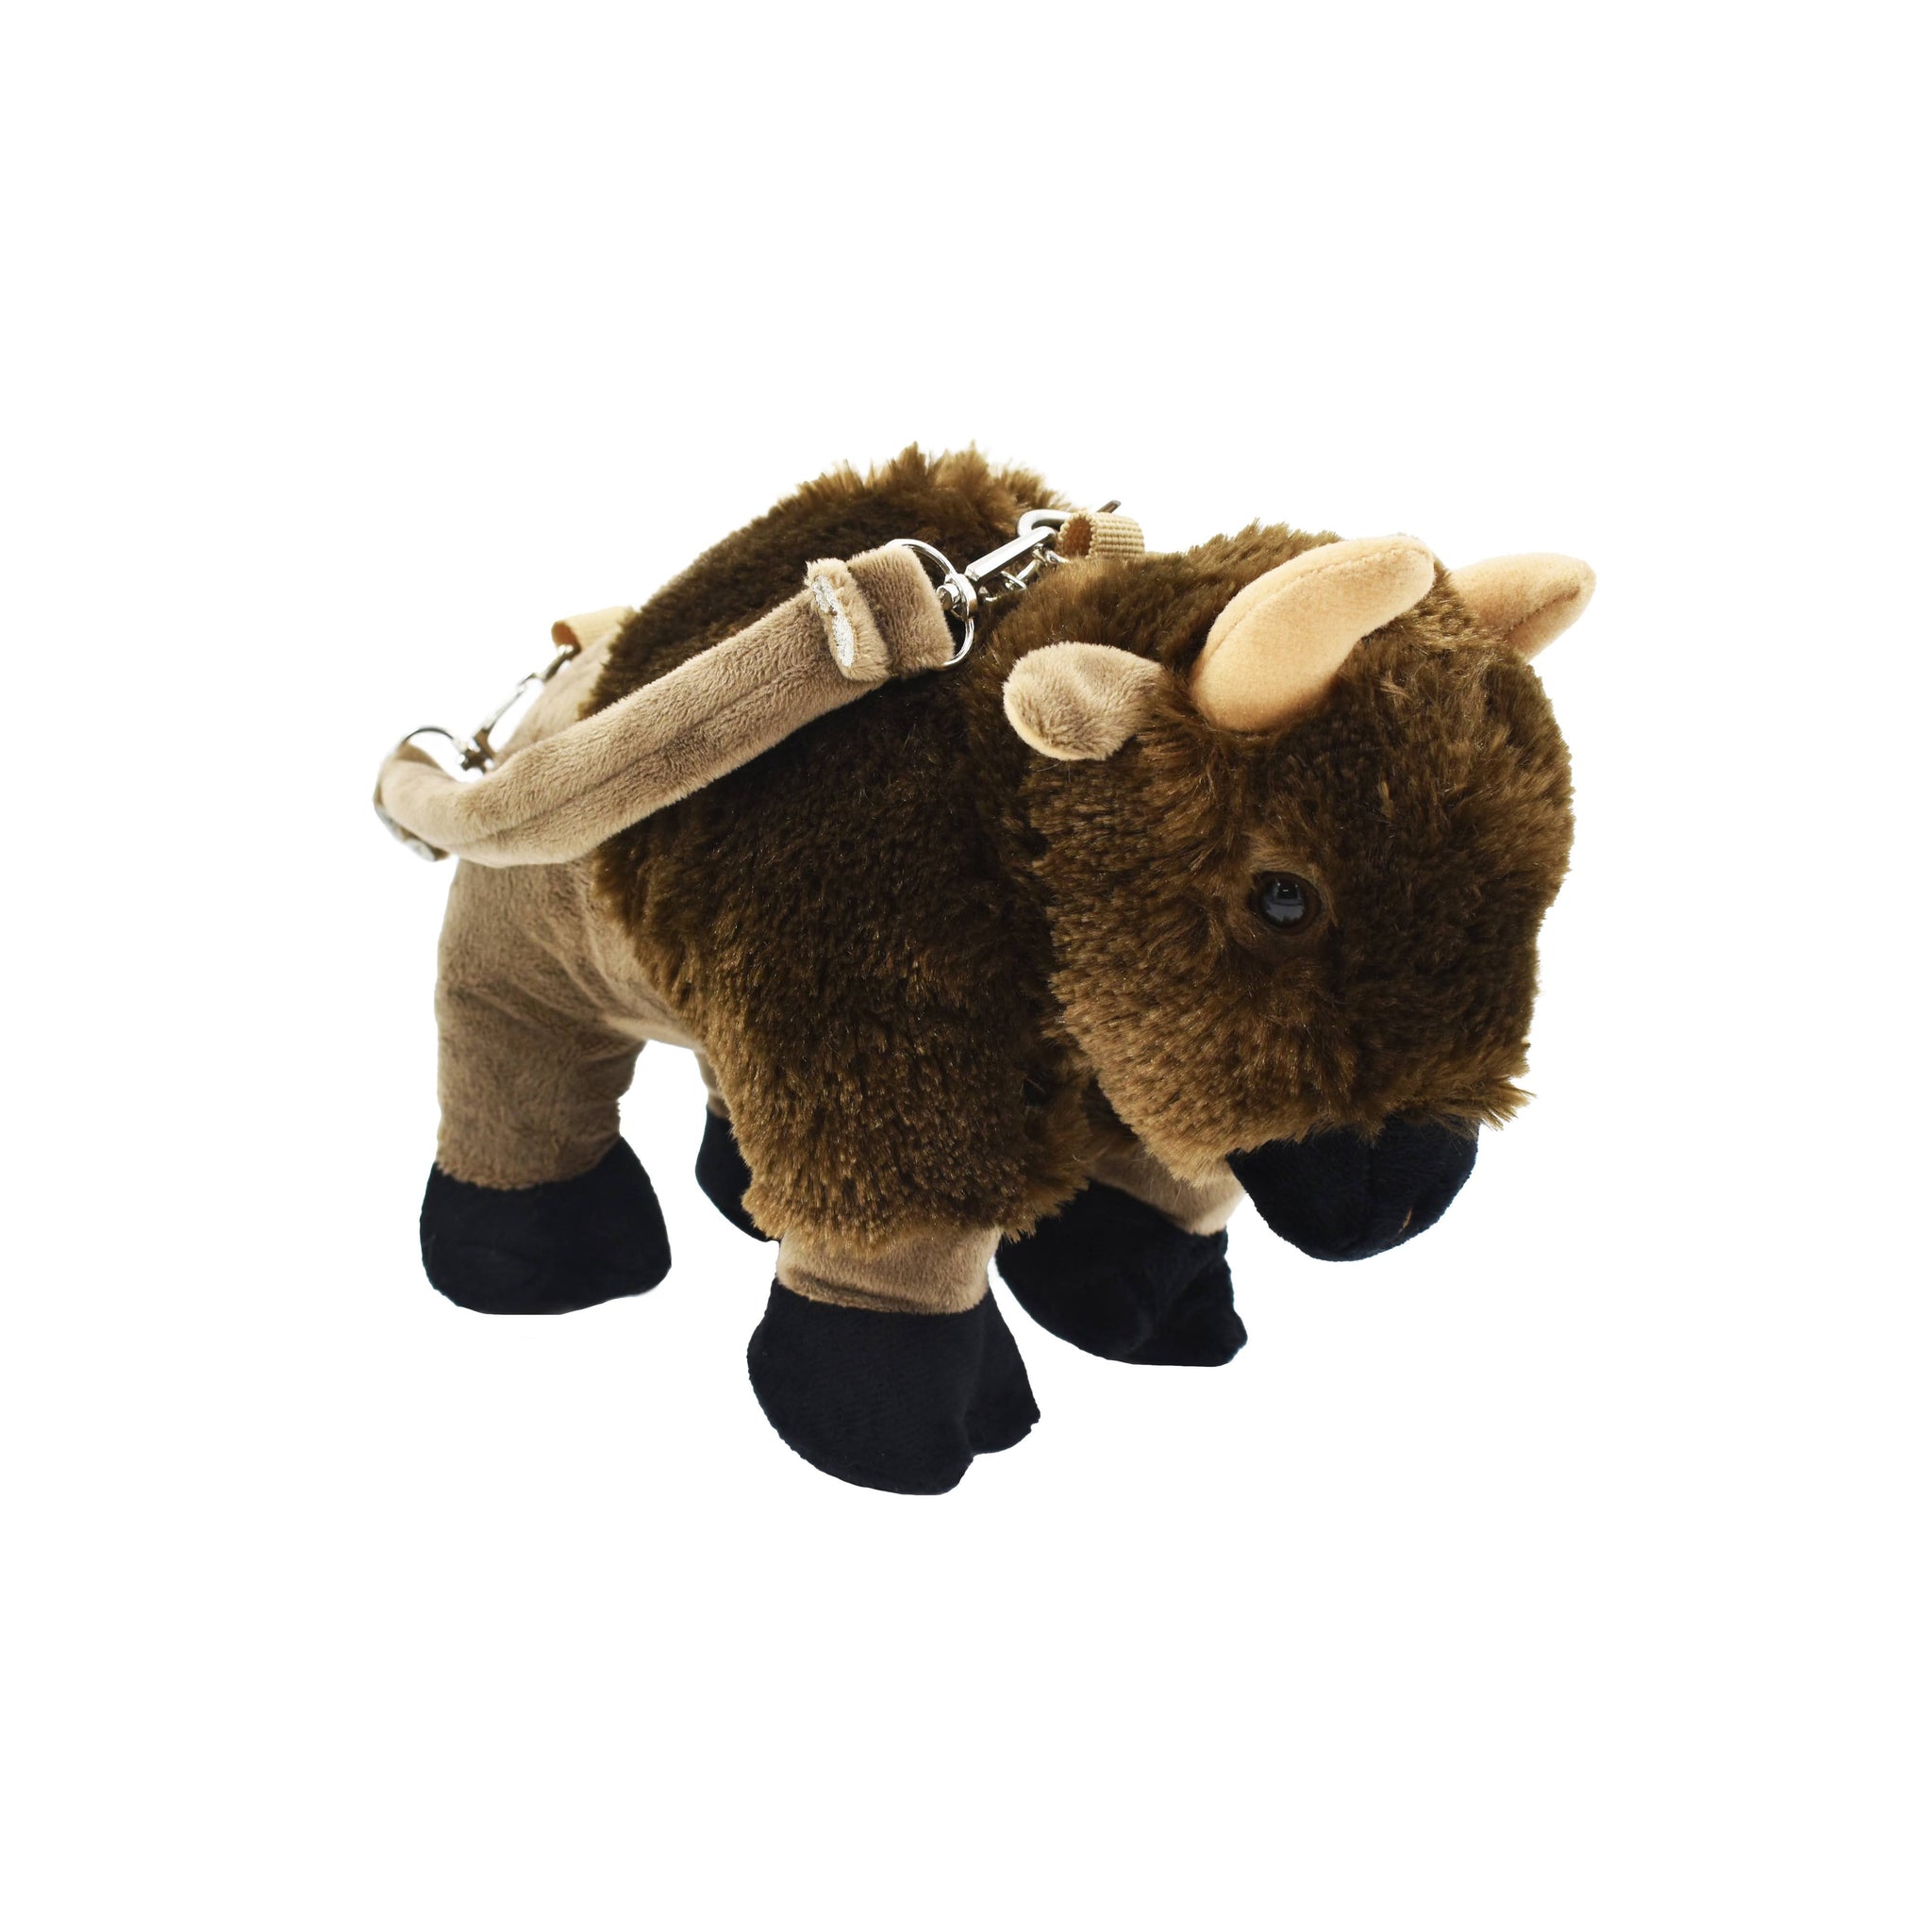 bflo store buffalo ny kids stuffed animal bison purse